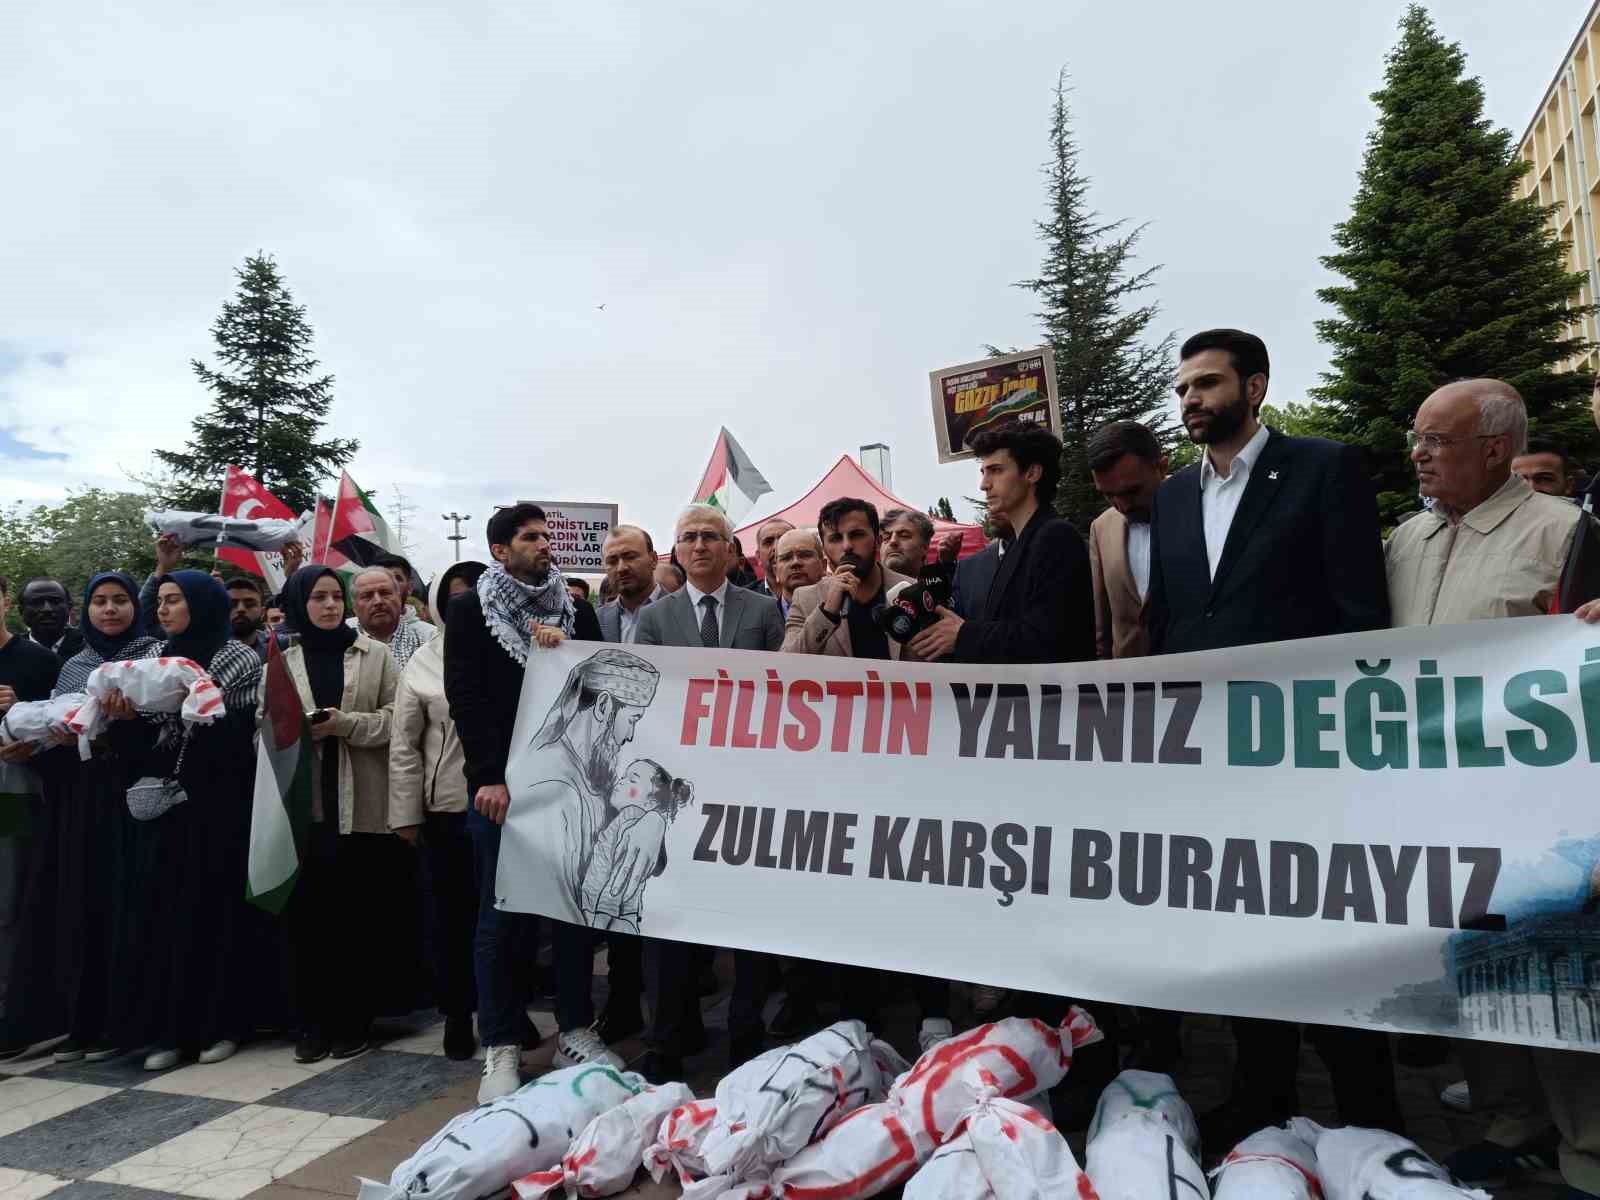 Eskişehir Osmangazi Üniversitesinde Filistin’e destek yürüyüşü gerçekleştirildi